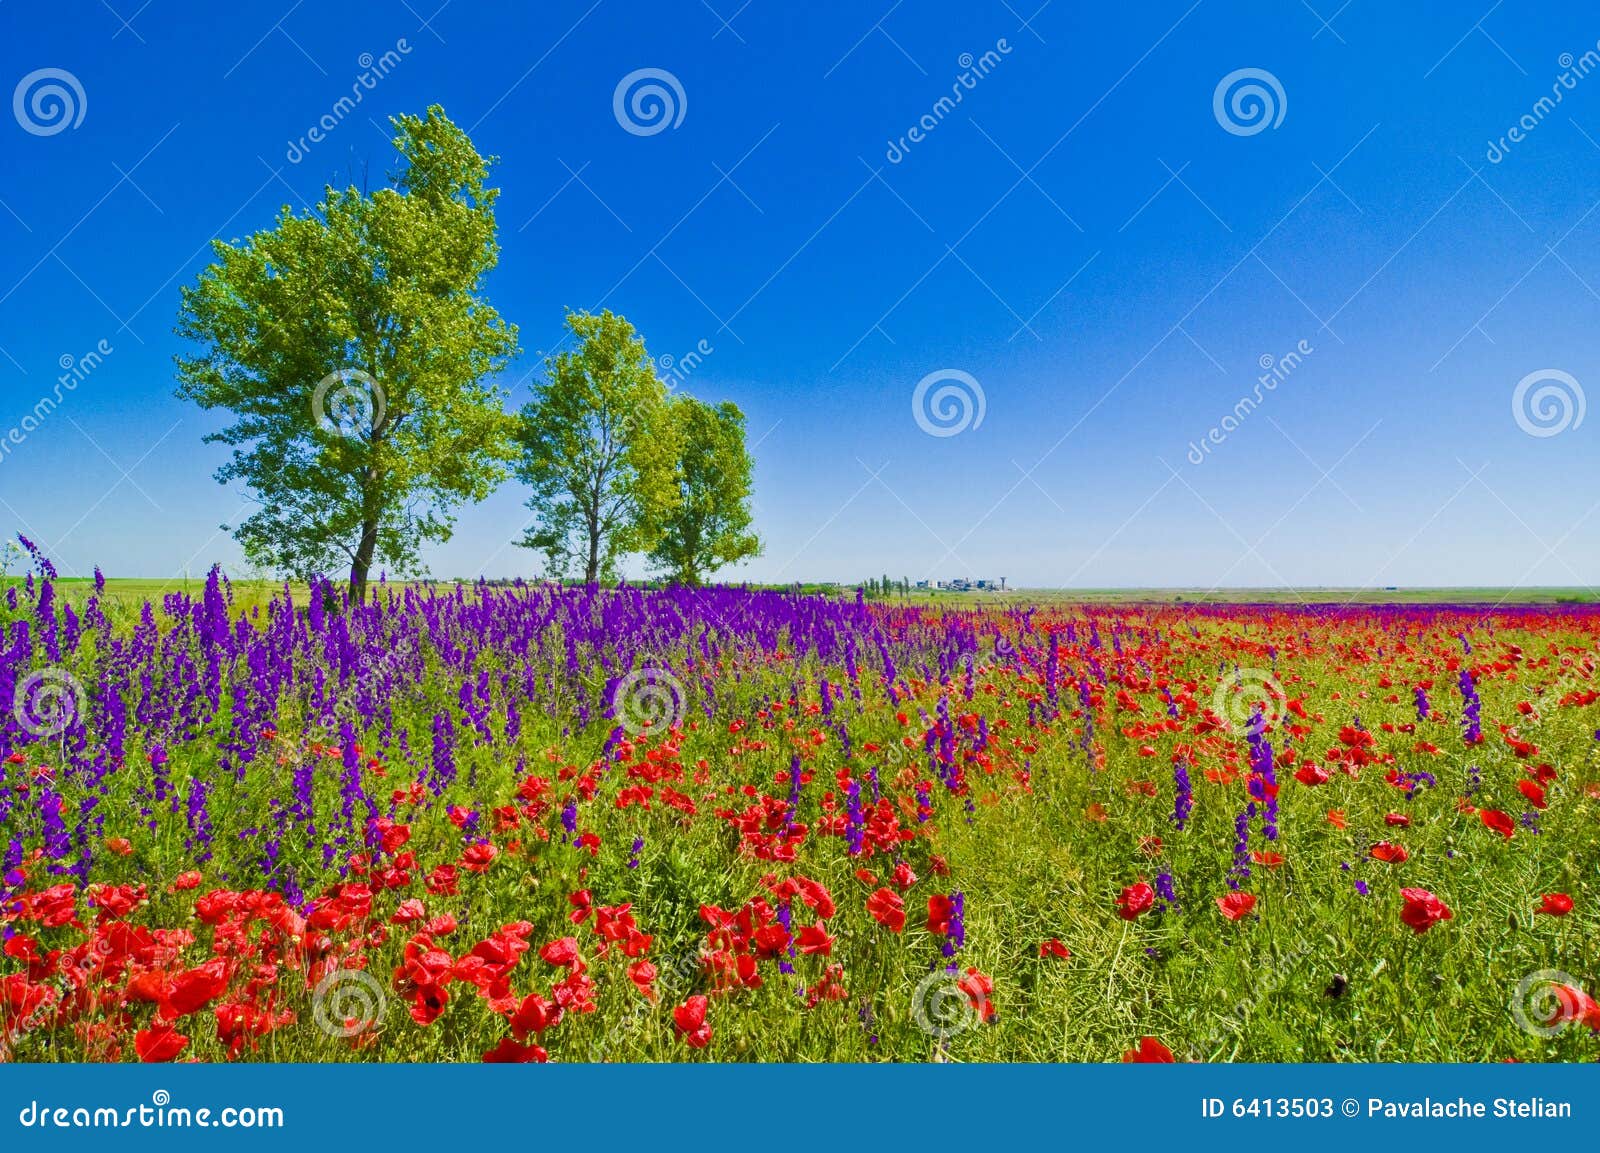 wildflowers field